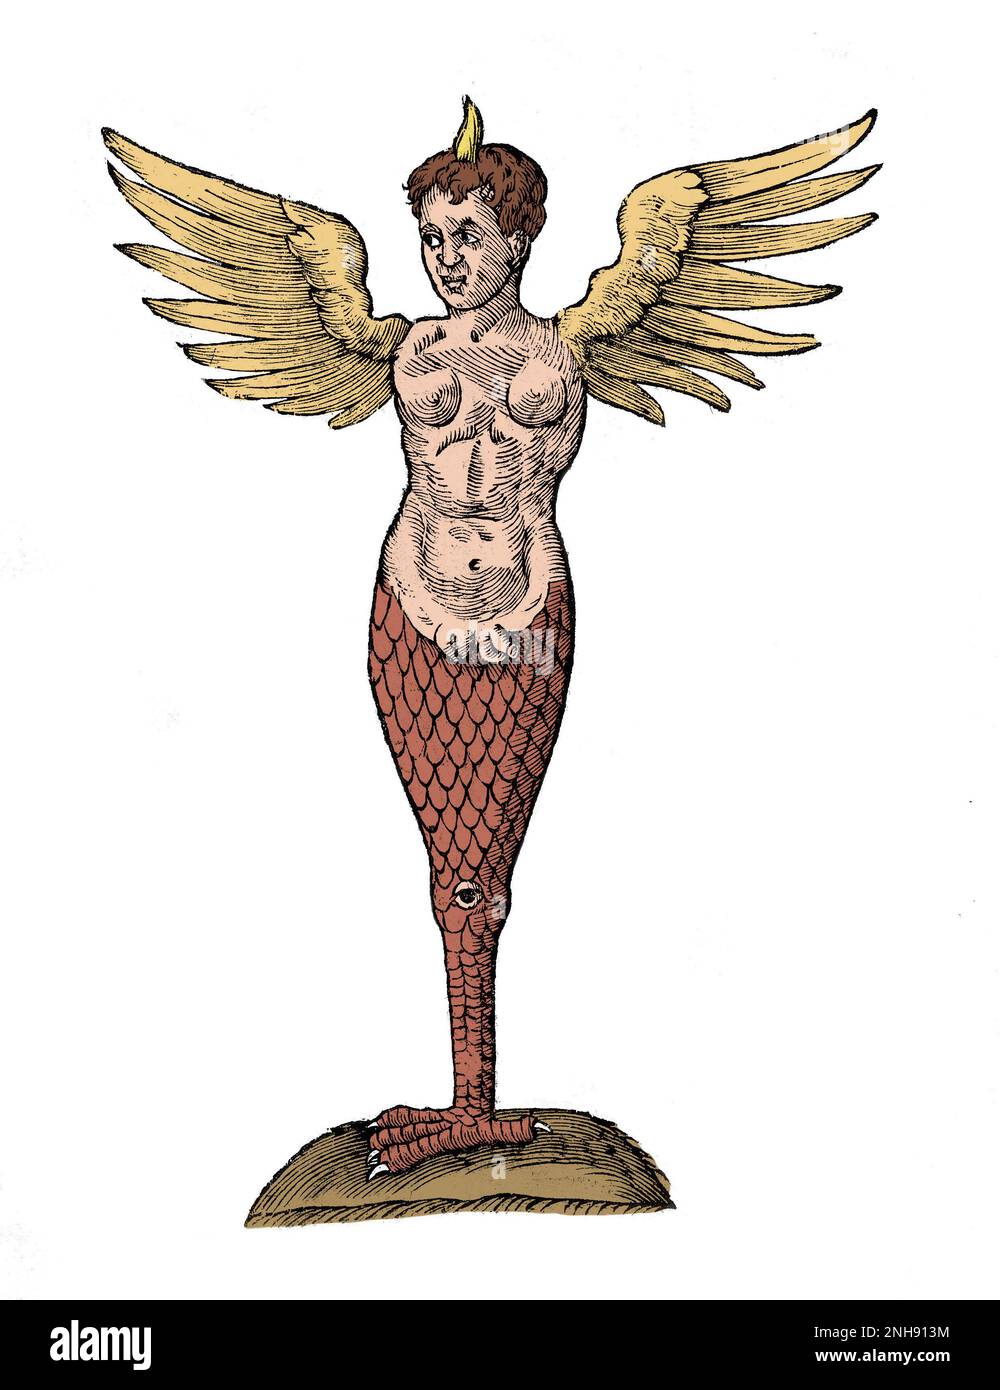 Un monstre à cornes et ailées avec le pied d'un oiseau. Illustration de l'Opéra omnia par Ulisse Aldrovandi, 17th siècle. En 1512, un apothicaire florentin, Lucca Landucci, a décrit un monstre né à Ravenne comme ayant une seule corne, des ailes ressemblant à une chauve-souris, un corps inférieur en serpentin et hermaphrodique, un seul oeil fixé dans son genou, et une griffe semblable à un aigle pour un pied. Le monstre était probablement un enfant né avec un trouble génétique grave et inhabituel. Les dossiers indiquent que le pape Julius II a ordonné à l'enfant de mourir de faim. Des coupes de bois exagérées du « monster » prolifèrent à travers l'Europe. Colorisé. Banque D'Images